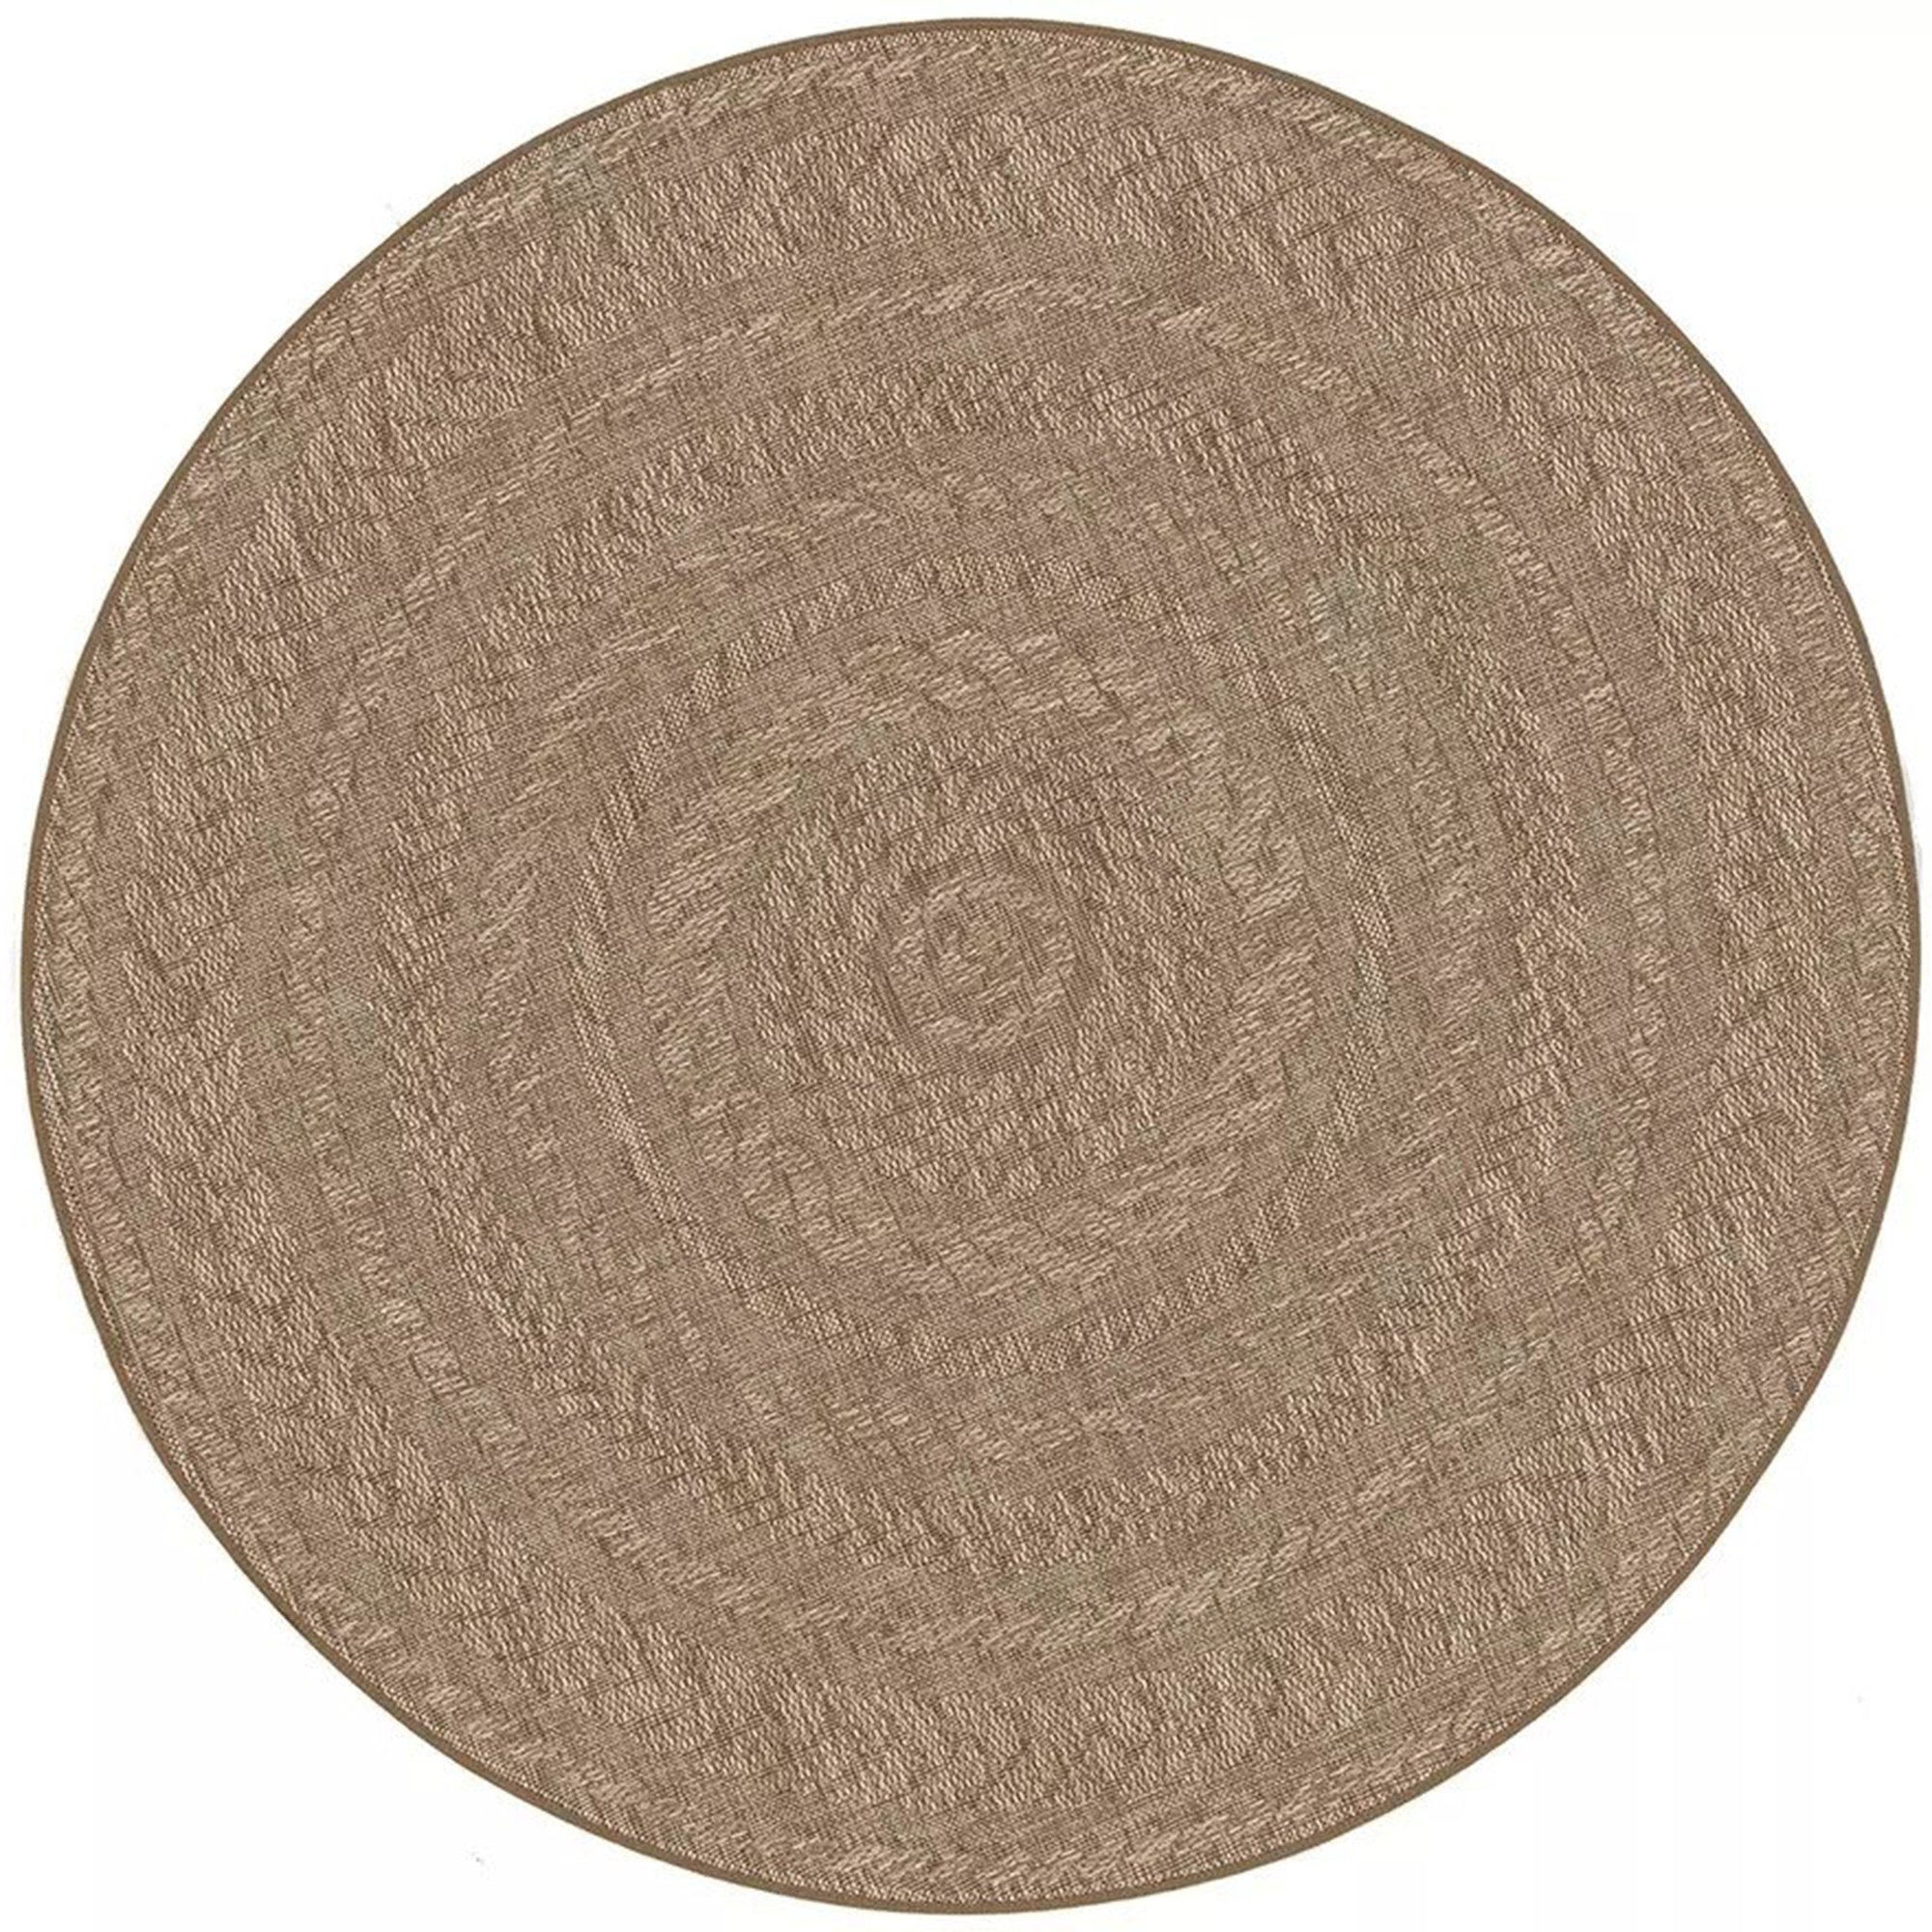 Round outdoor rug